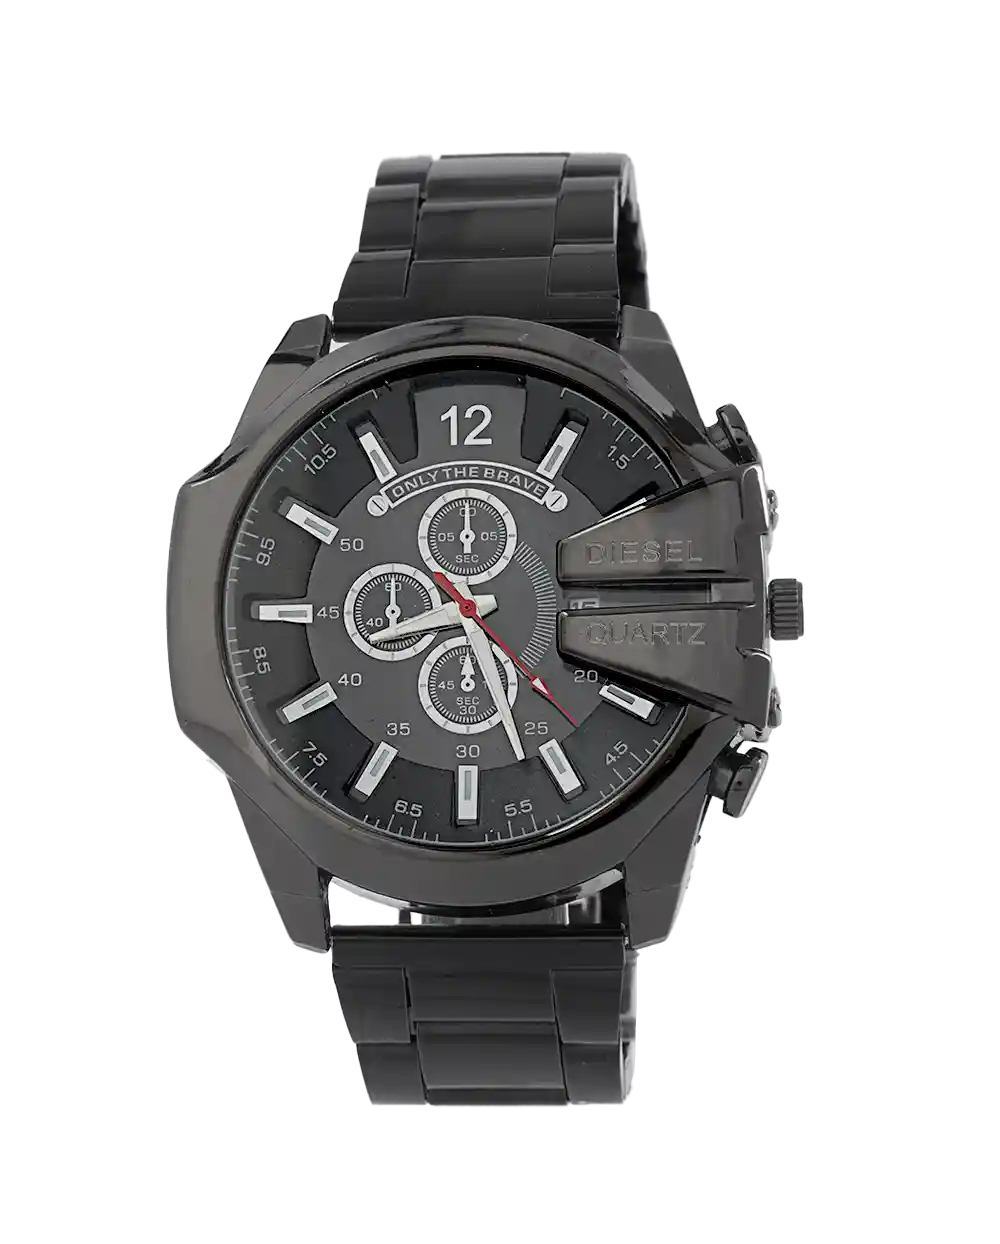 خرید ساعت مچی مردانه دیزل DIESEL مدل 2071 بند استیل مشکی و صفحه مشکی رنگ ثابت بهترین قیمت به همراه ارسال رایگان و جعبه